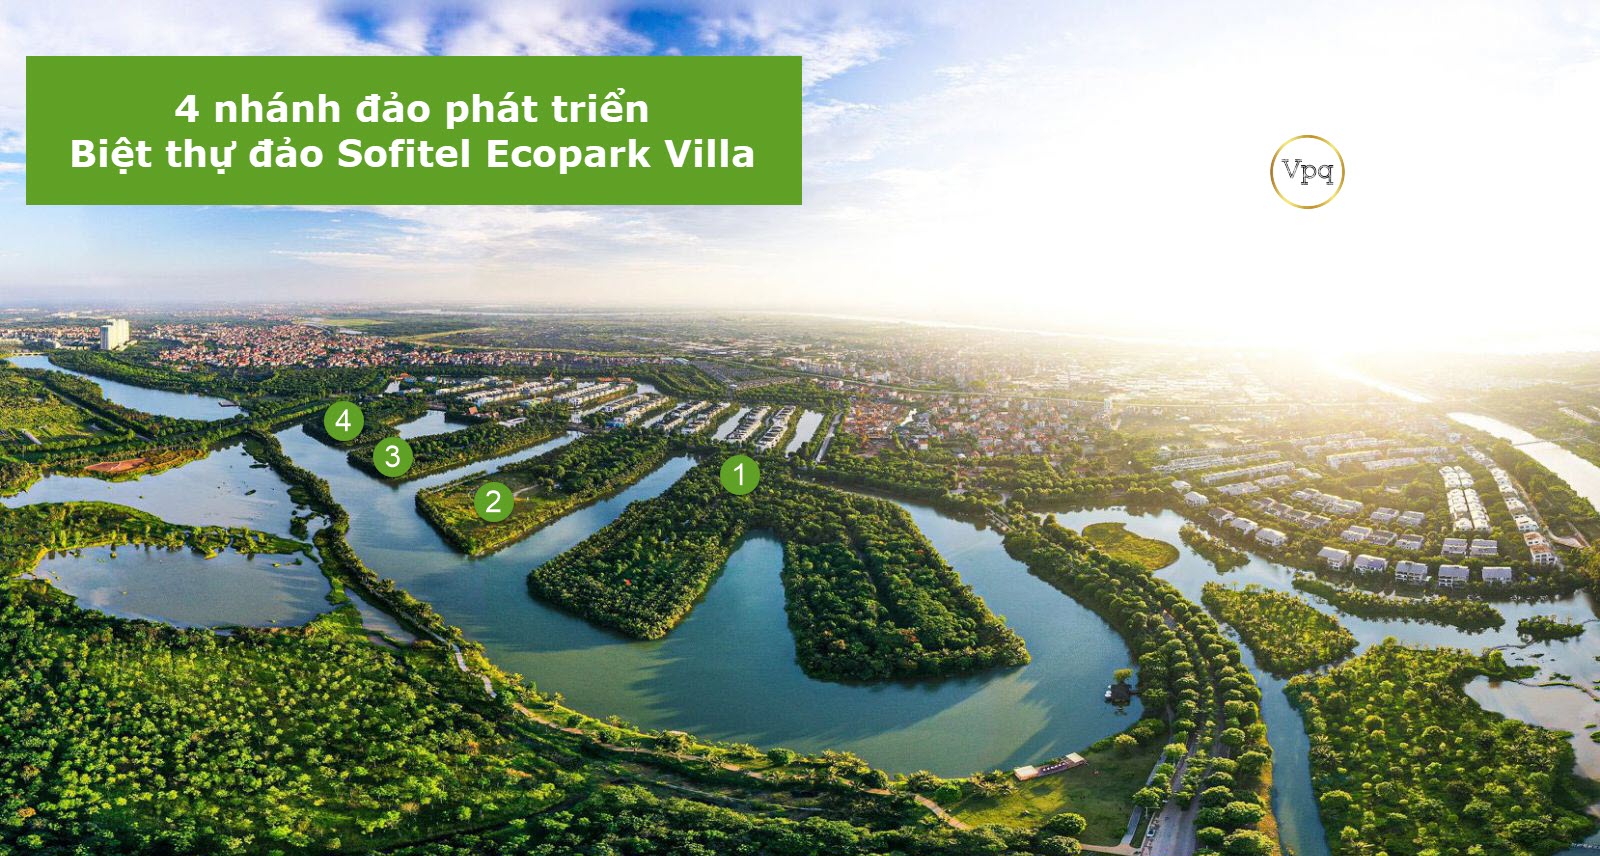 Dự án biệt thự đảo Sofitel Ecopark Villa được quản lý bởi Sofitel Hotels & Resorts